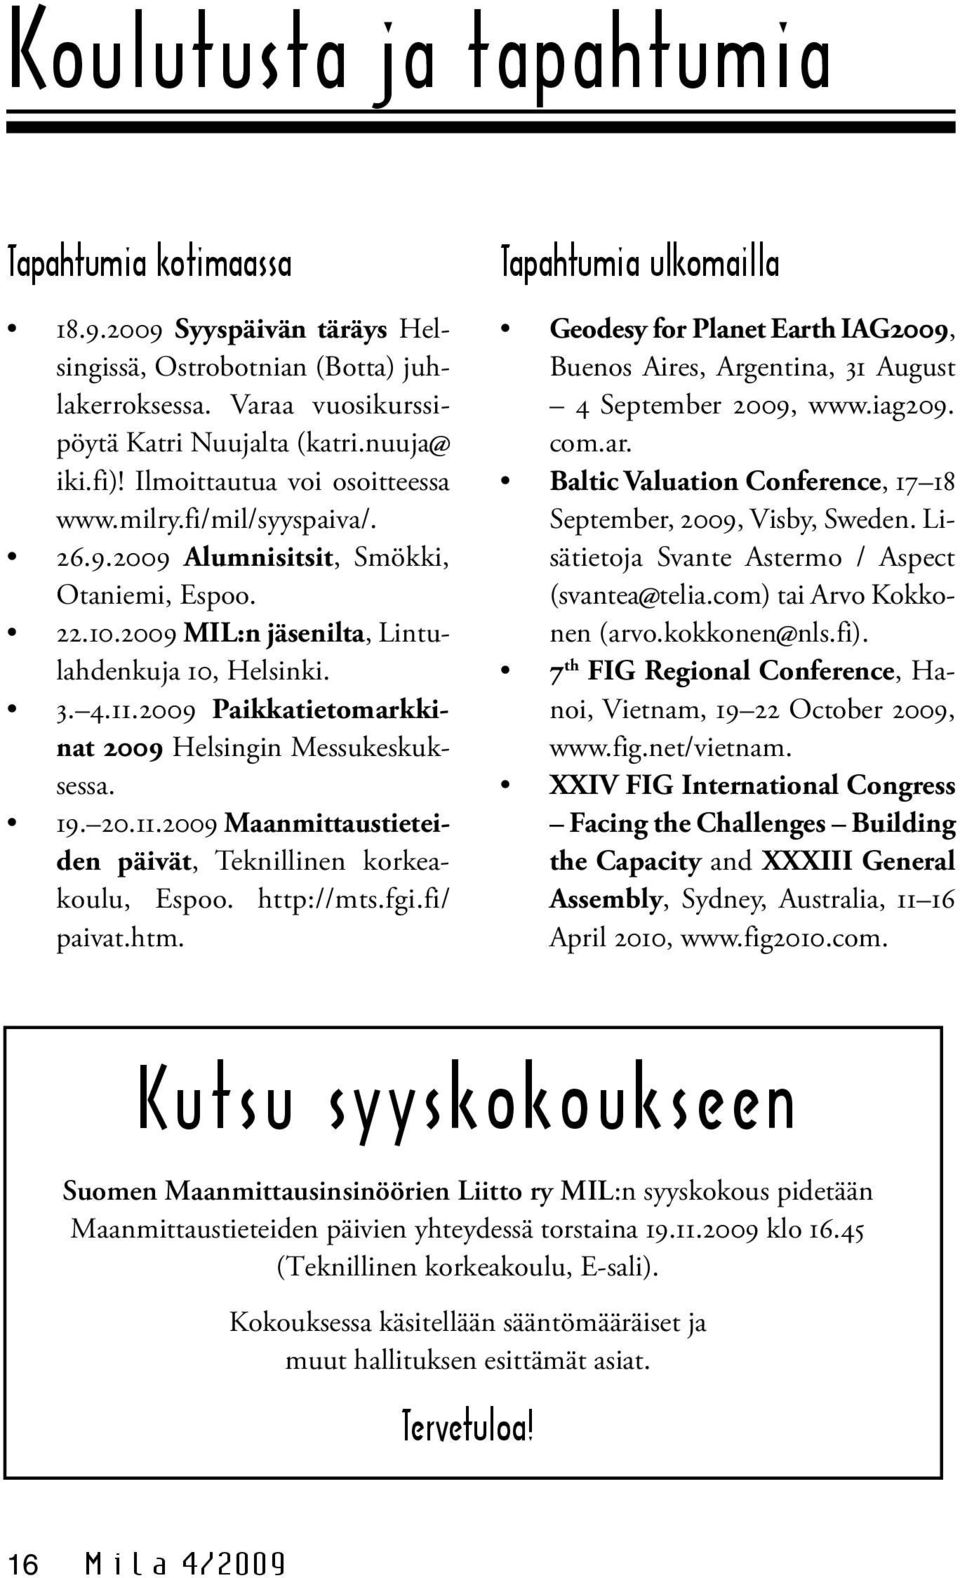 2009 Paikkatietomarkkinat 2009 Helsingin Messukeskuksessa. 19. 20.11.2009 Maanmittaustieteiden päivät, Teknillinen korkeakoulu, Espoo. http://mts.fgi.fi/ paivat.htm.